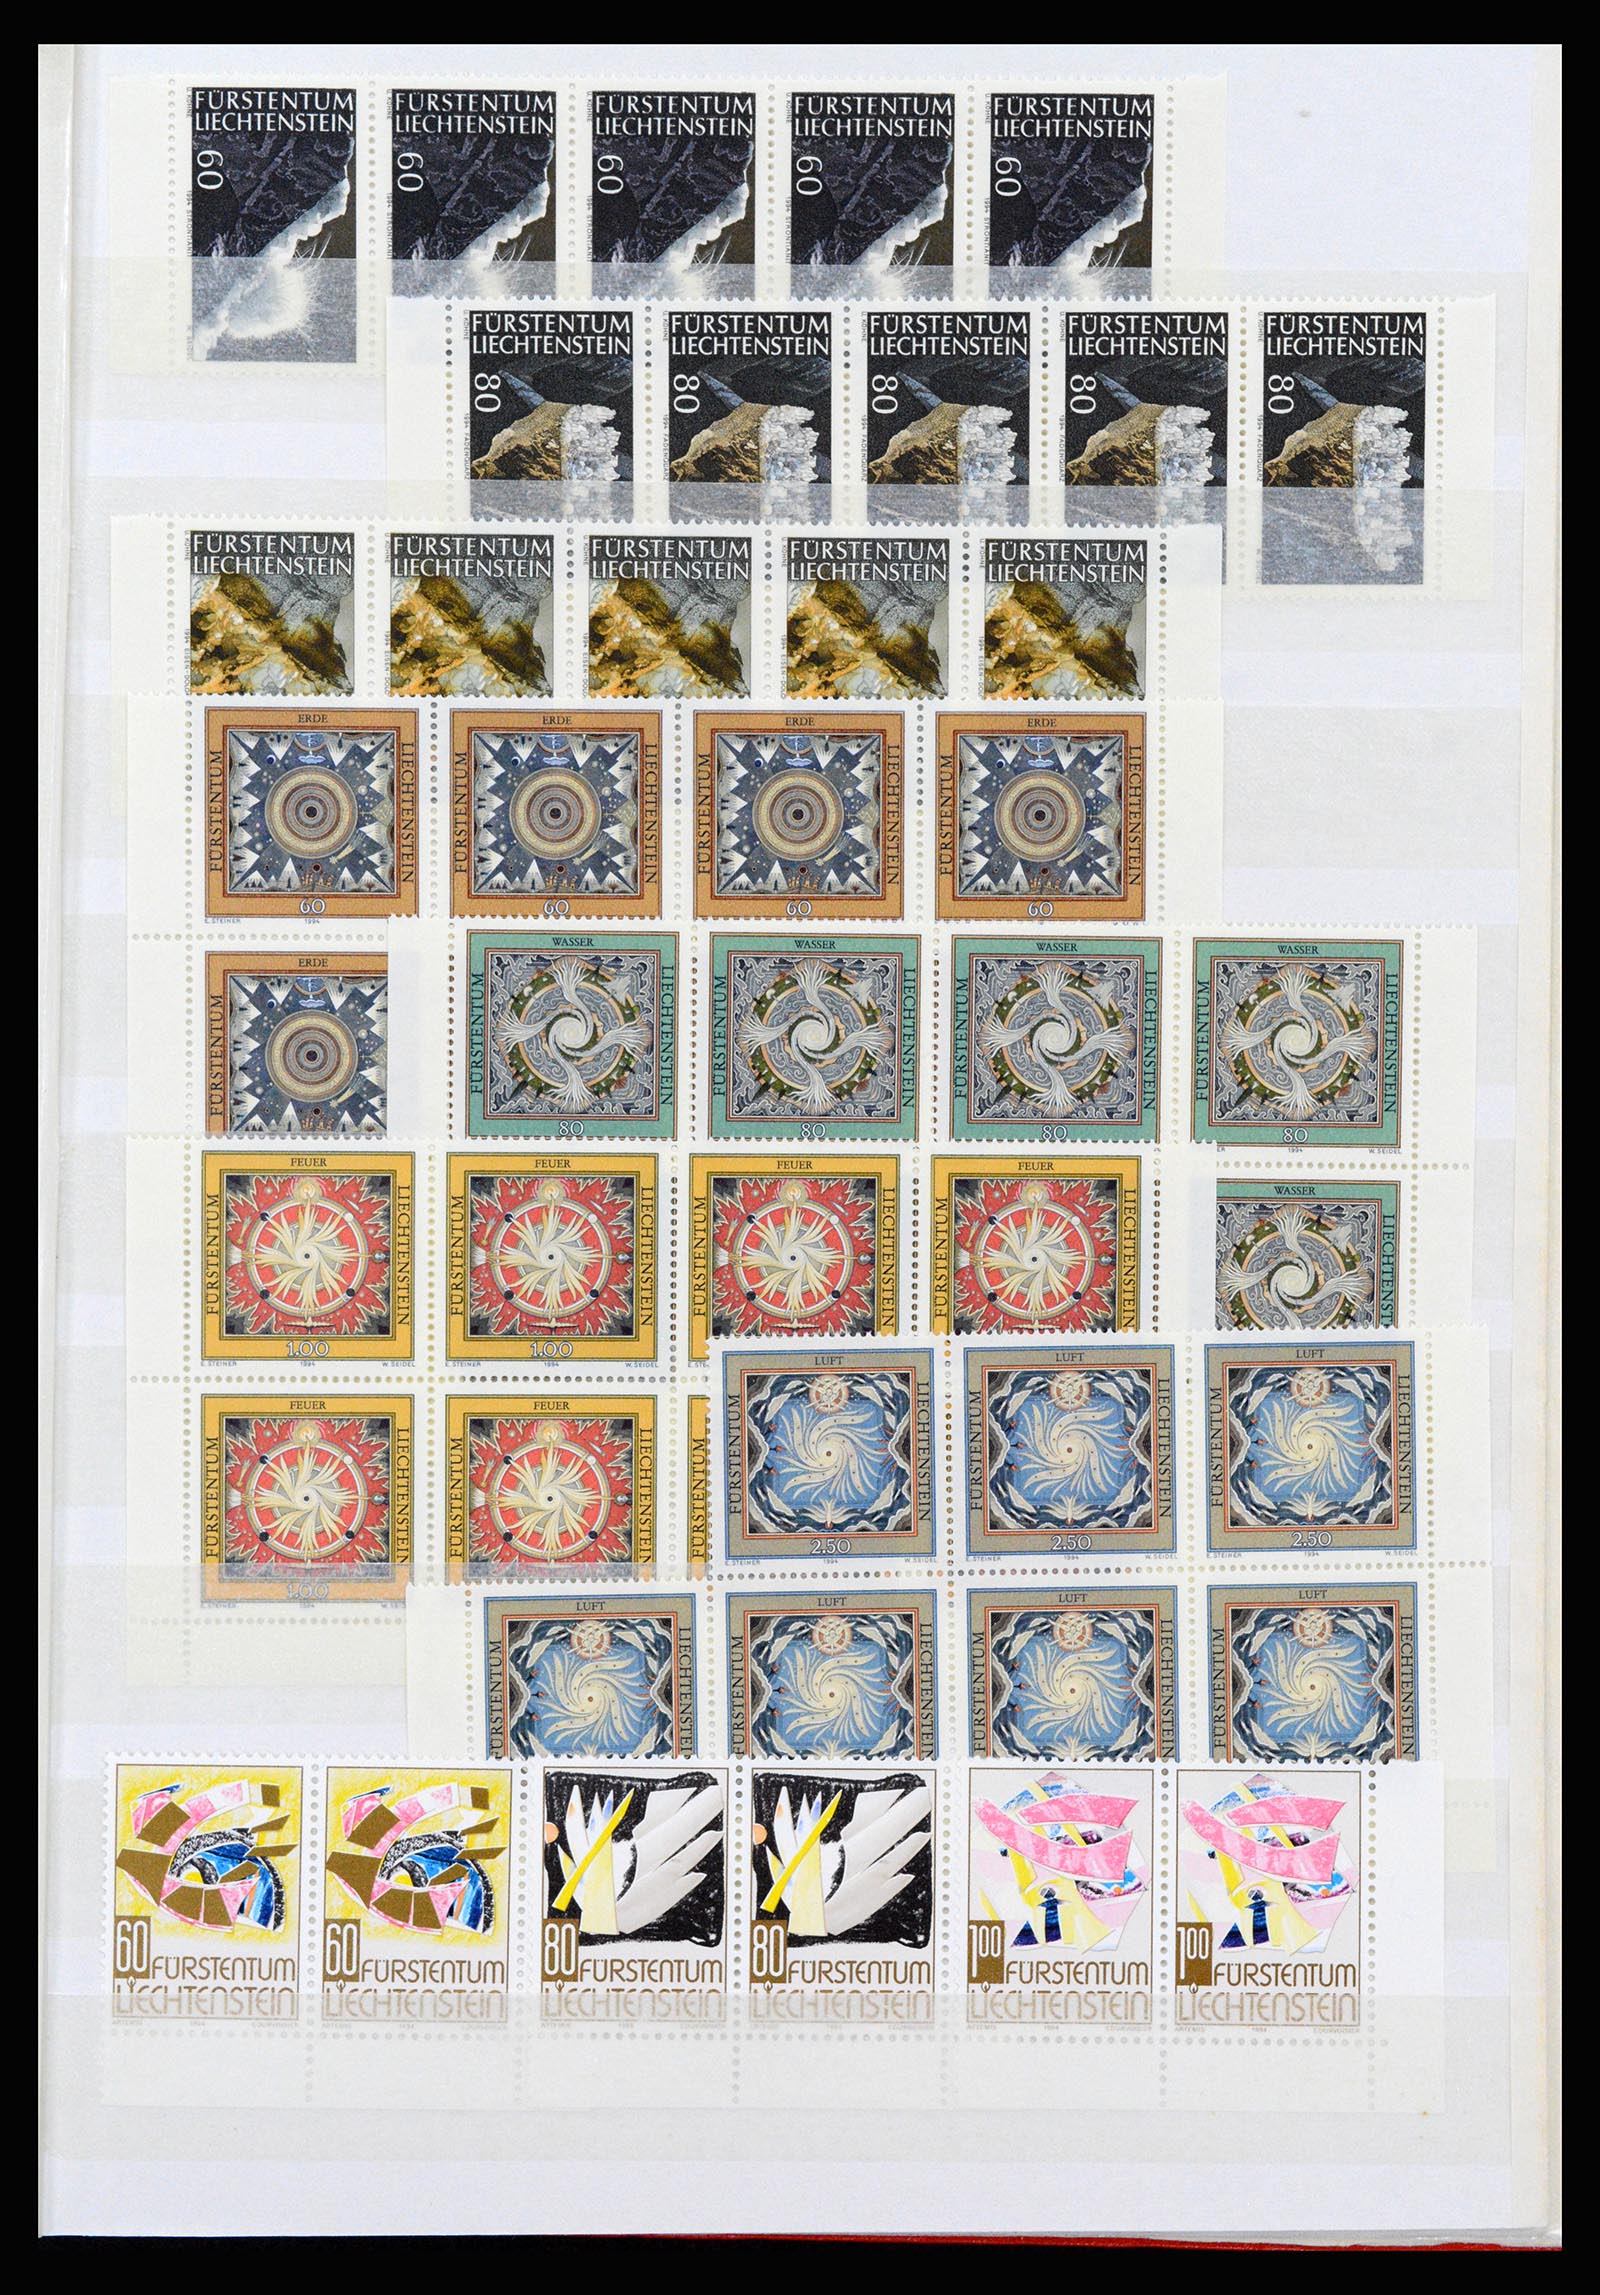 37261 115 - Stamp collection 37261 Liechtenstein 1961-1995.